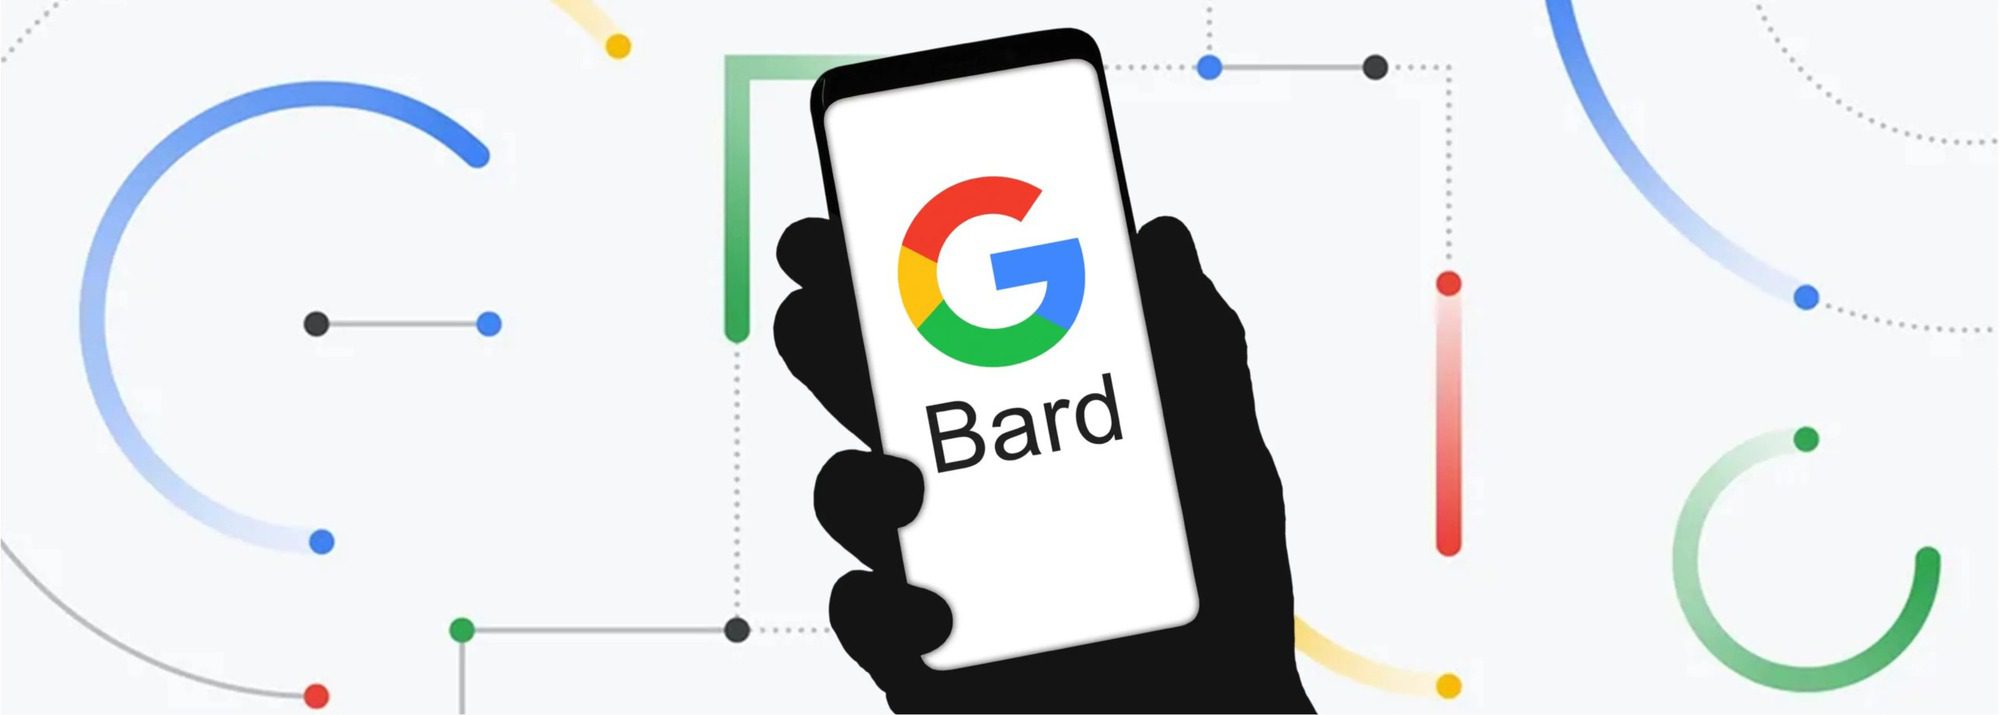 Google công bố chatbot AI Bard, nỗ lực tái khẳng định vị thế của mình trong lĩnh vực công cụ tìm kiếm - Ảnh 1.